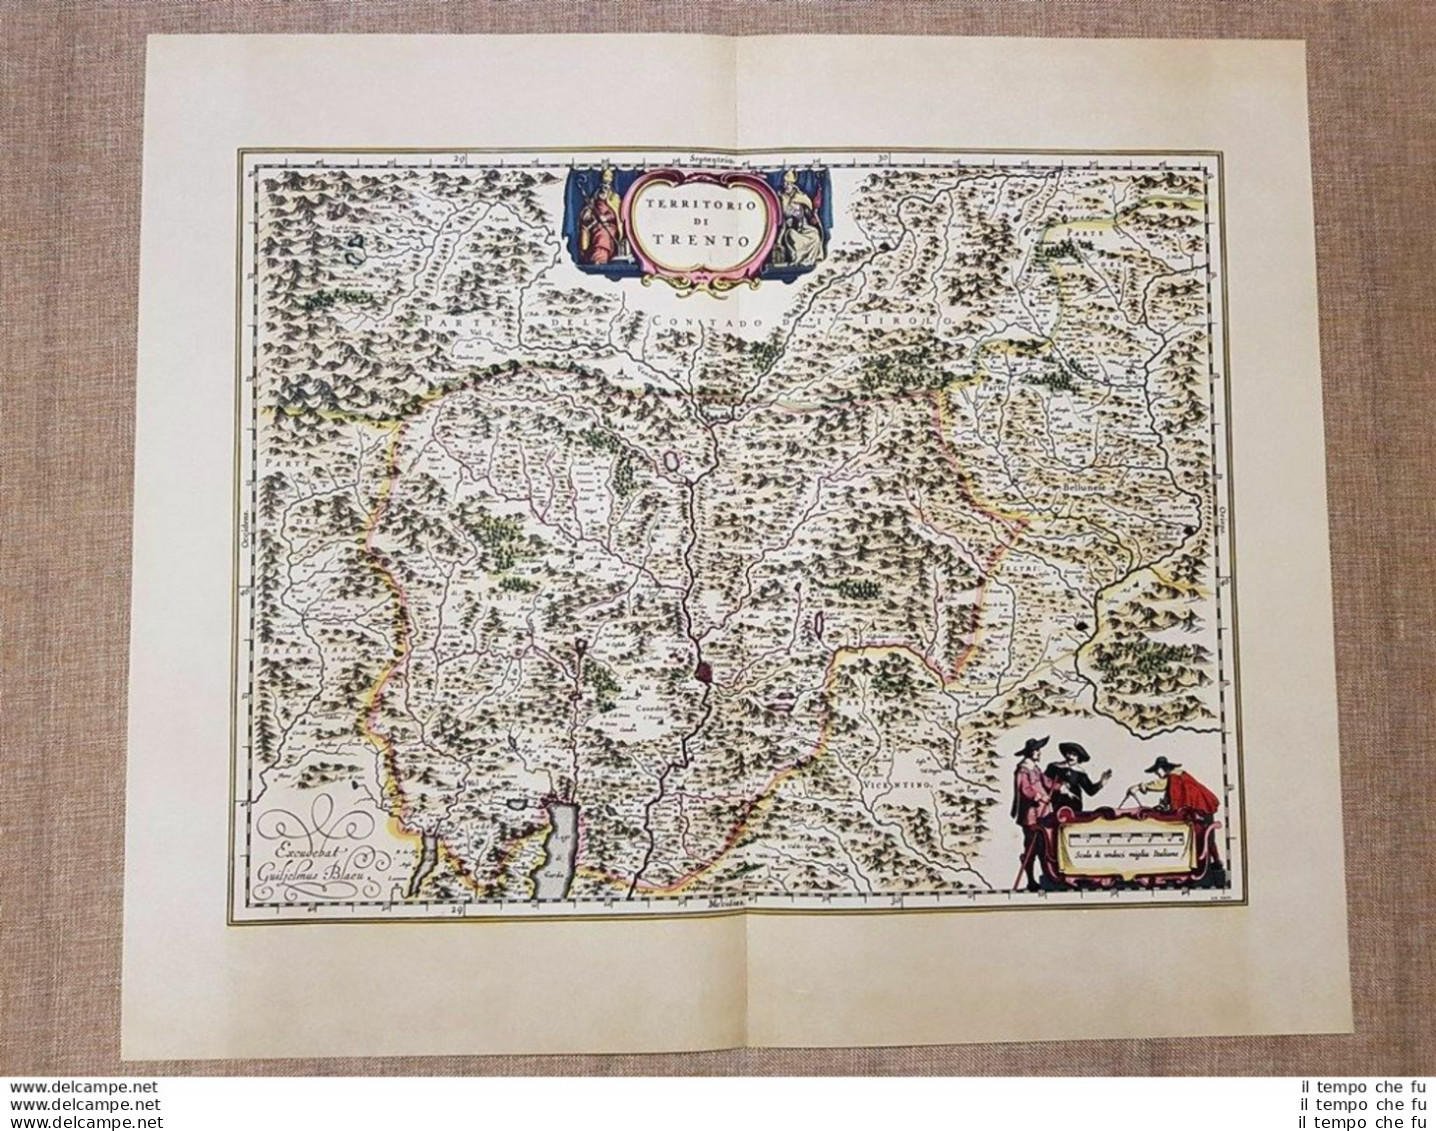 Carta Geografica O Mappa Territorio Di Trento Anno 1640 Joan Blaeu Ristampa - Cartes Géographiques